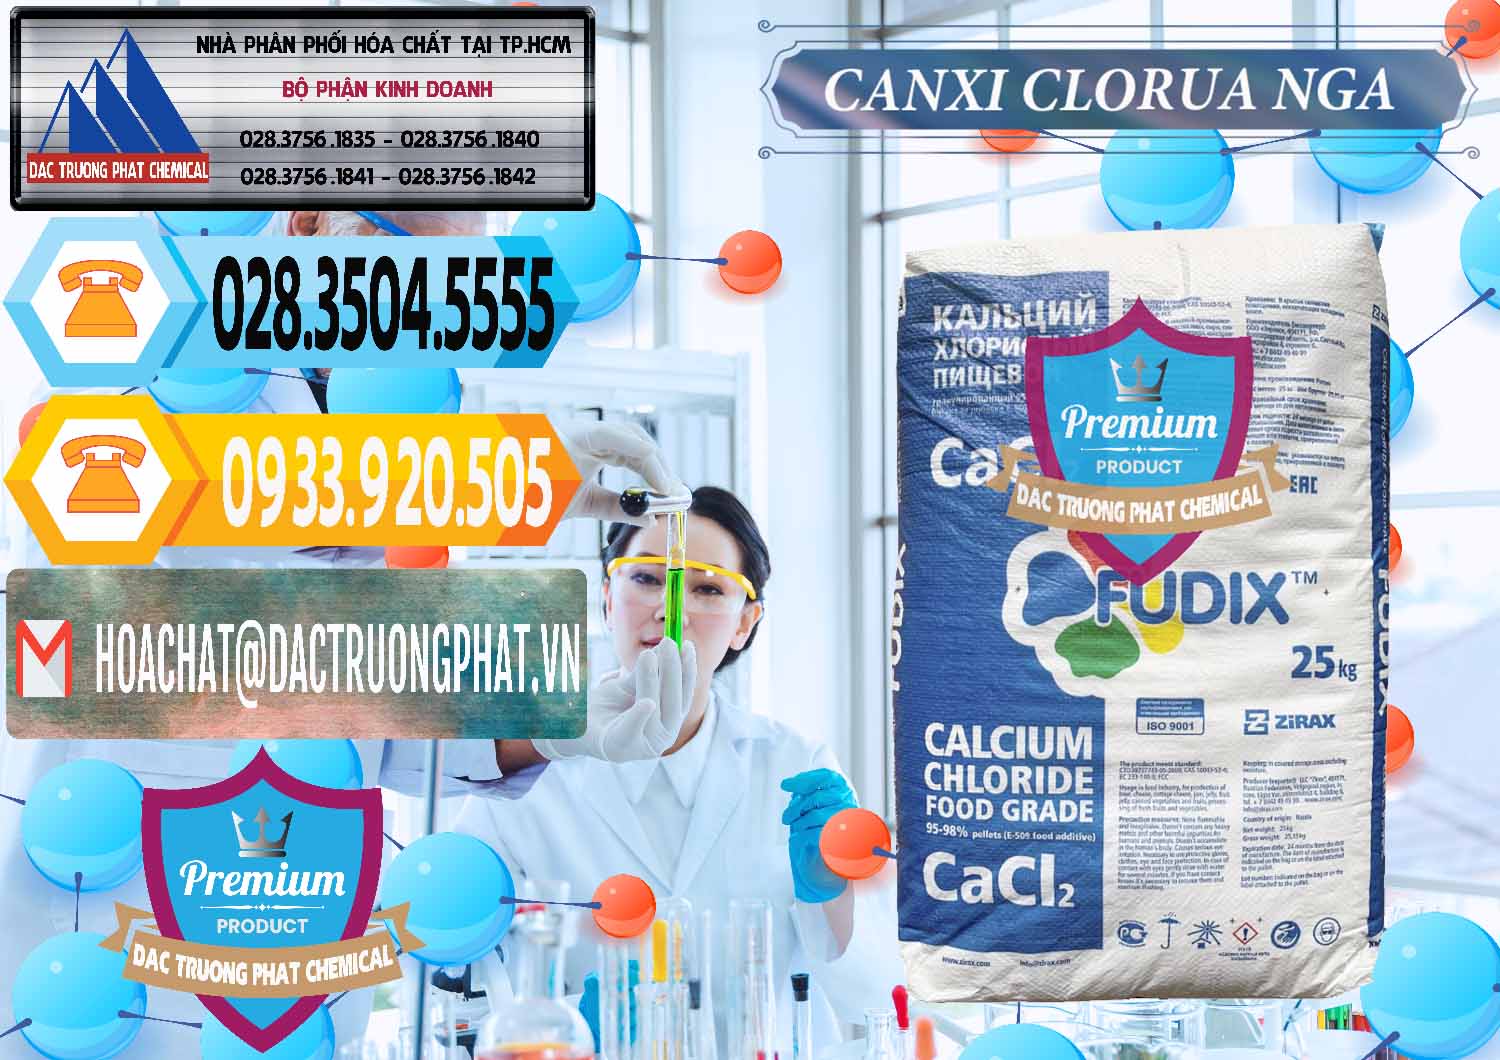 Cung cấp & bán CaCl2 – Canxi Clorua Nga Russia - 0430 - Chuyên nhập khẩu ( cung cấp ) hóa chất tại TP.HCM - hoachattayrua.net